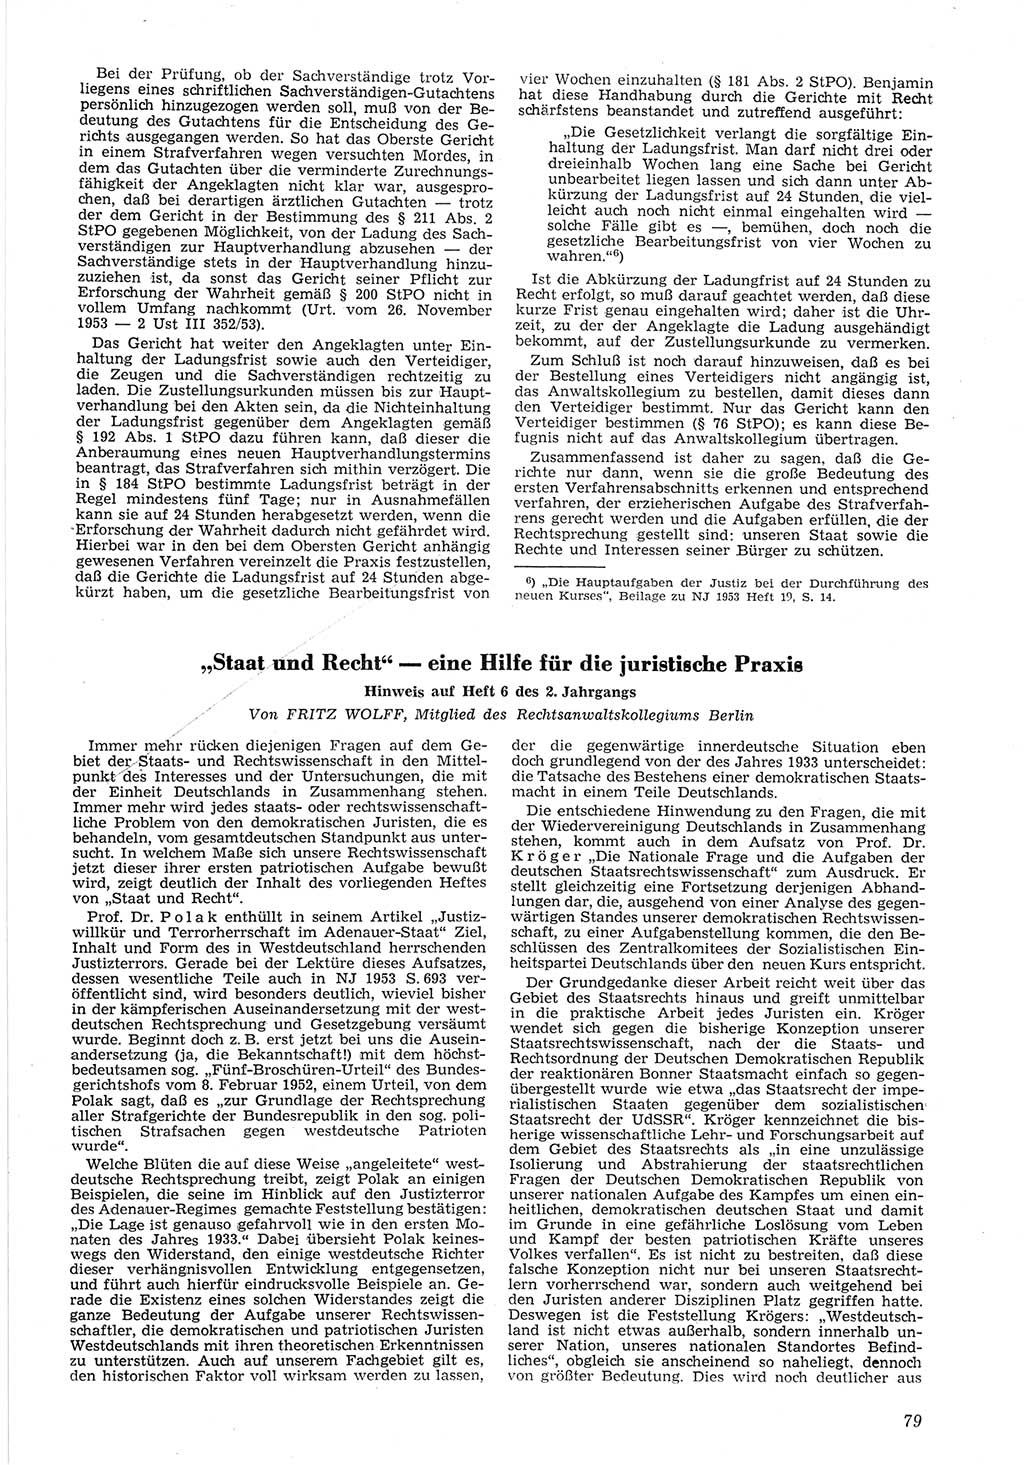 Neue Justiz (NJ), Zeitschrift für Recht und Rechtswissenschaft [Deutsche Demokratische Republik (DDR)], 8. Jahrgang 1954, Seite 79 (NJ DDR 1954, S. 79)